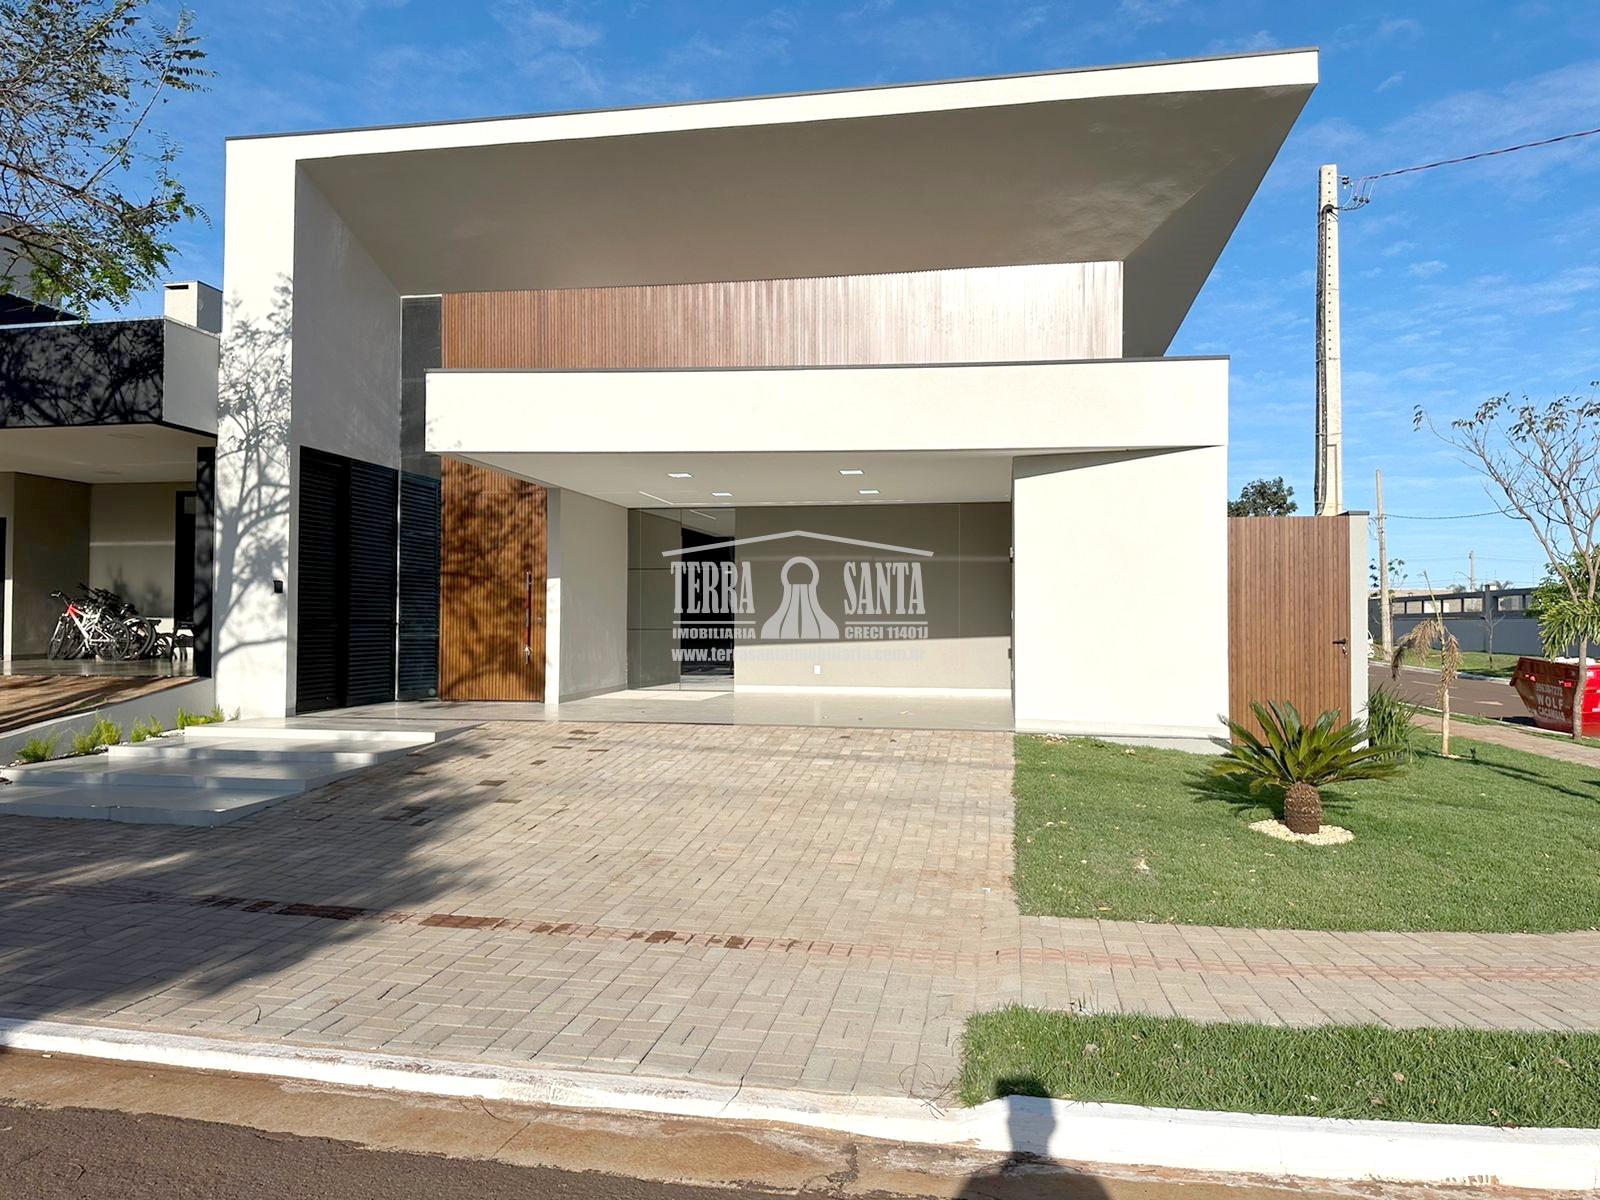 Casa nova para a venda Porto Madero, em Dourados MS.